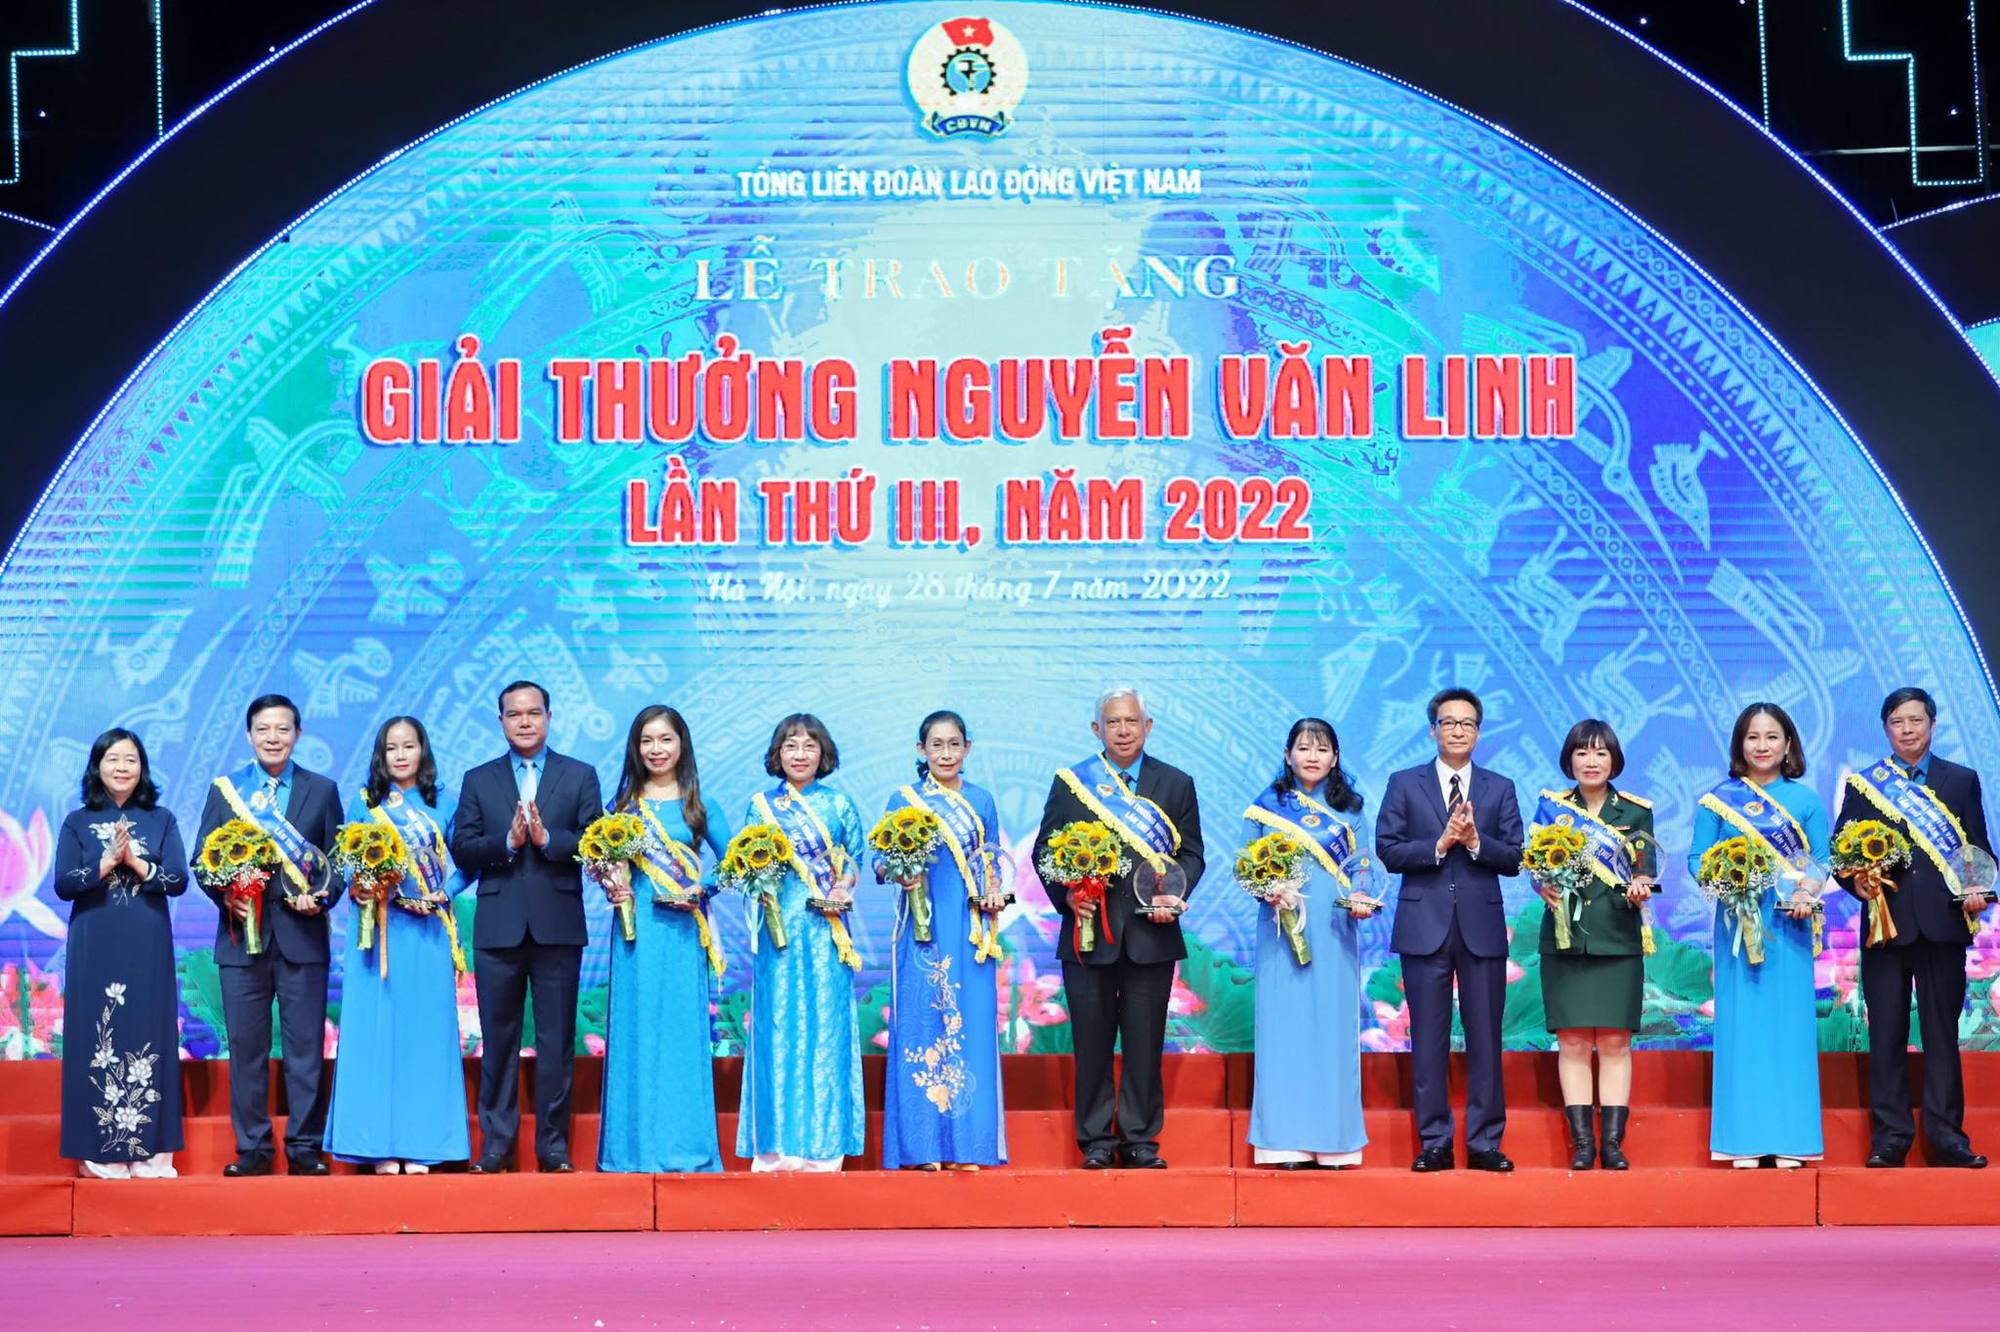 10 cán bộ công đoàn xuất sắc nhận Giải thưởng Nguyễn Văn Linh - Ảnh 3.